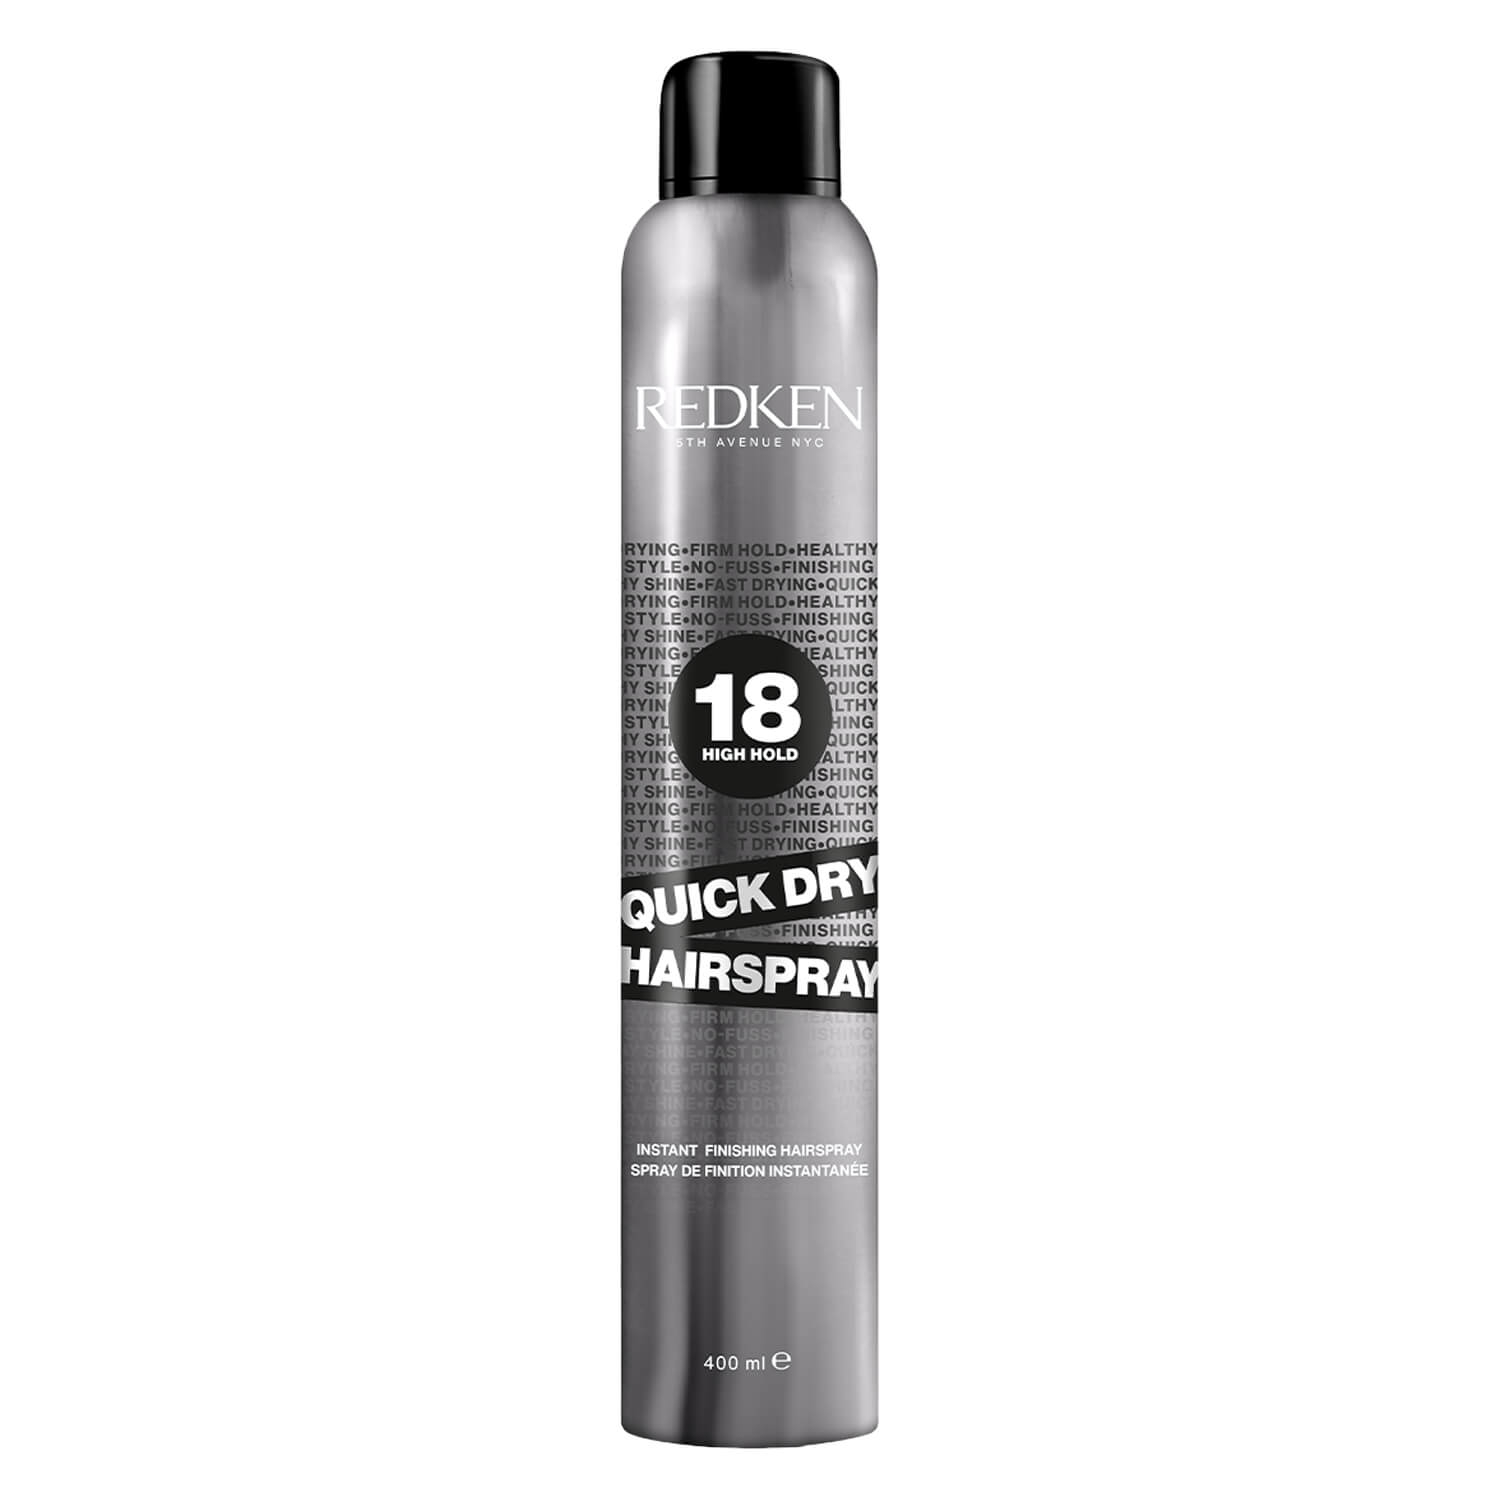 Produktbild von Redken Styling - Quick Dry Hairspray